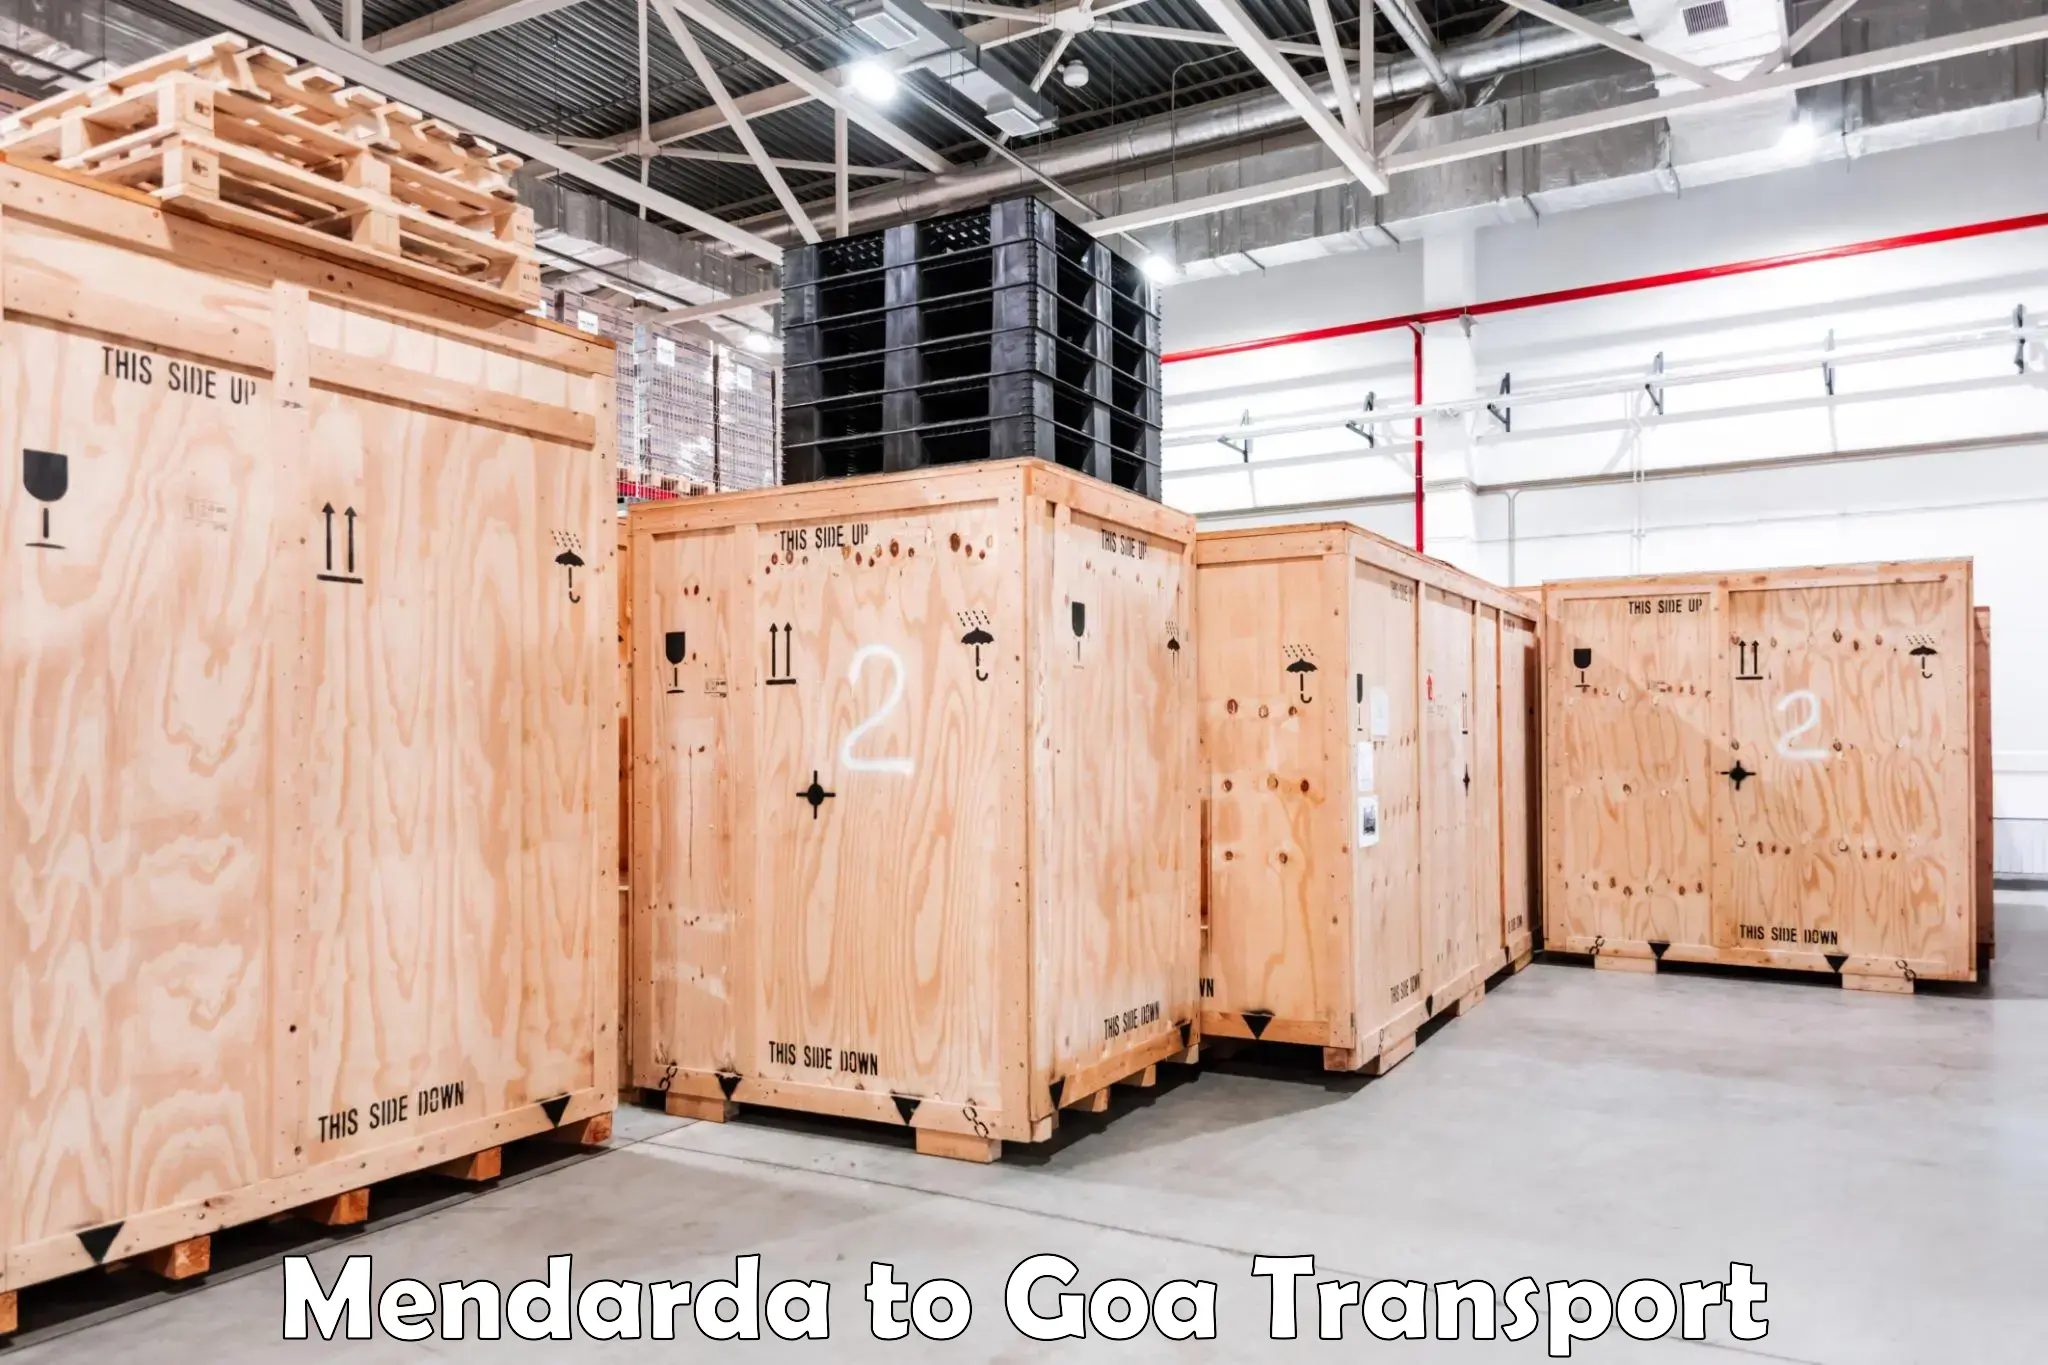 Container transport service Mendarda to Mormugao Port